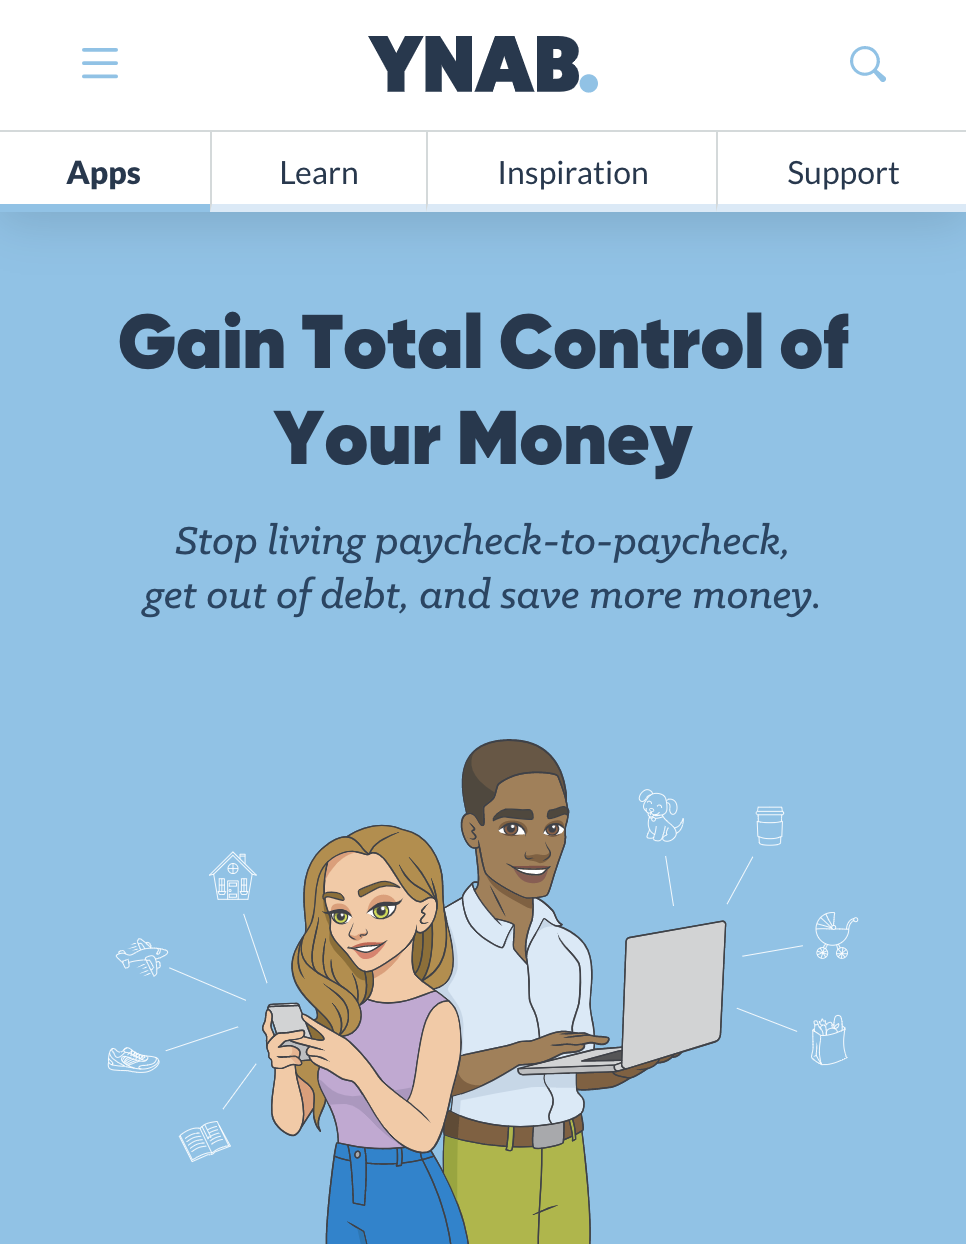 Persönliche Budgetierungstipps: Verwenden Sie eine App wie YNAB